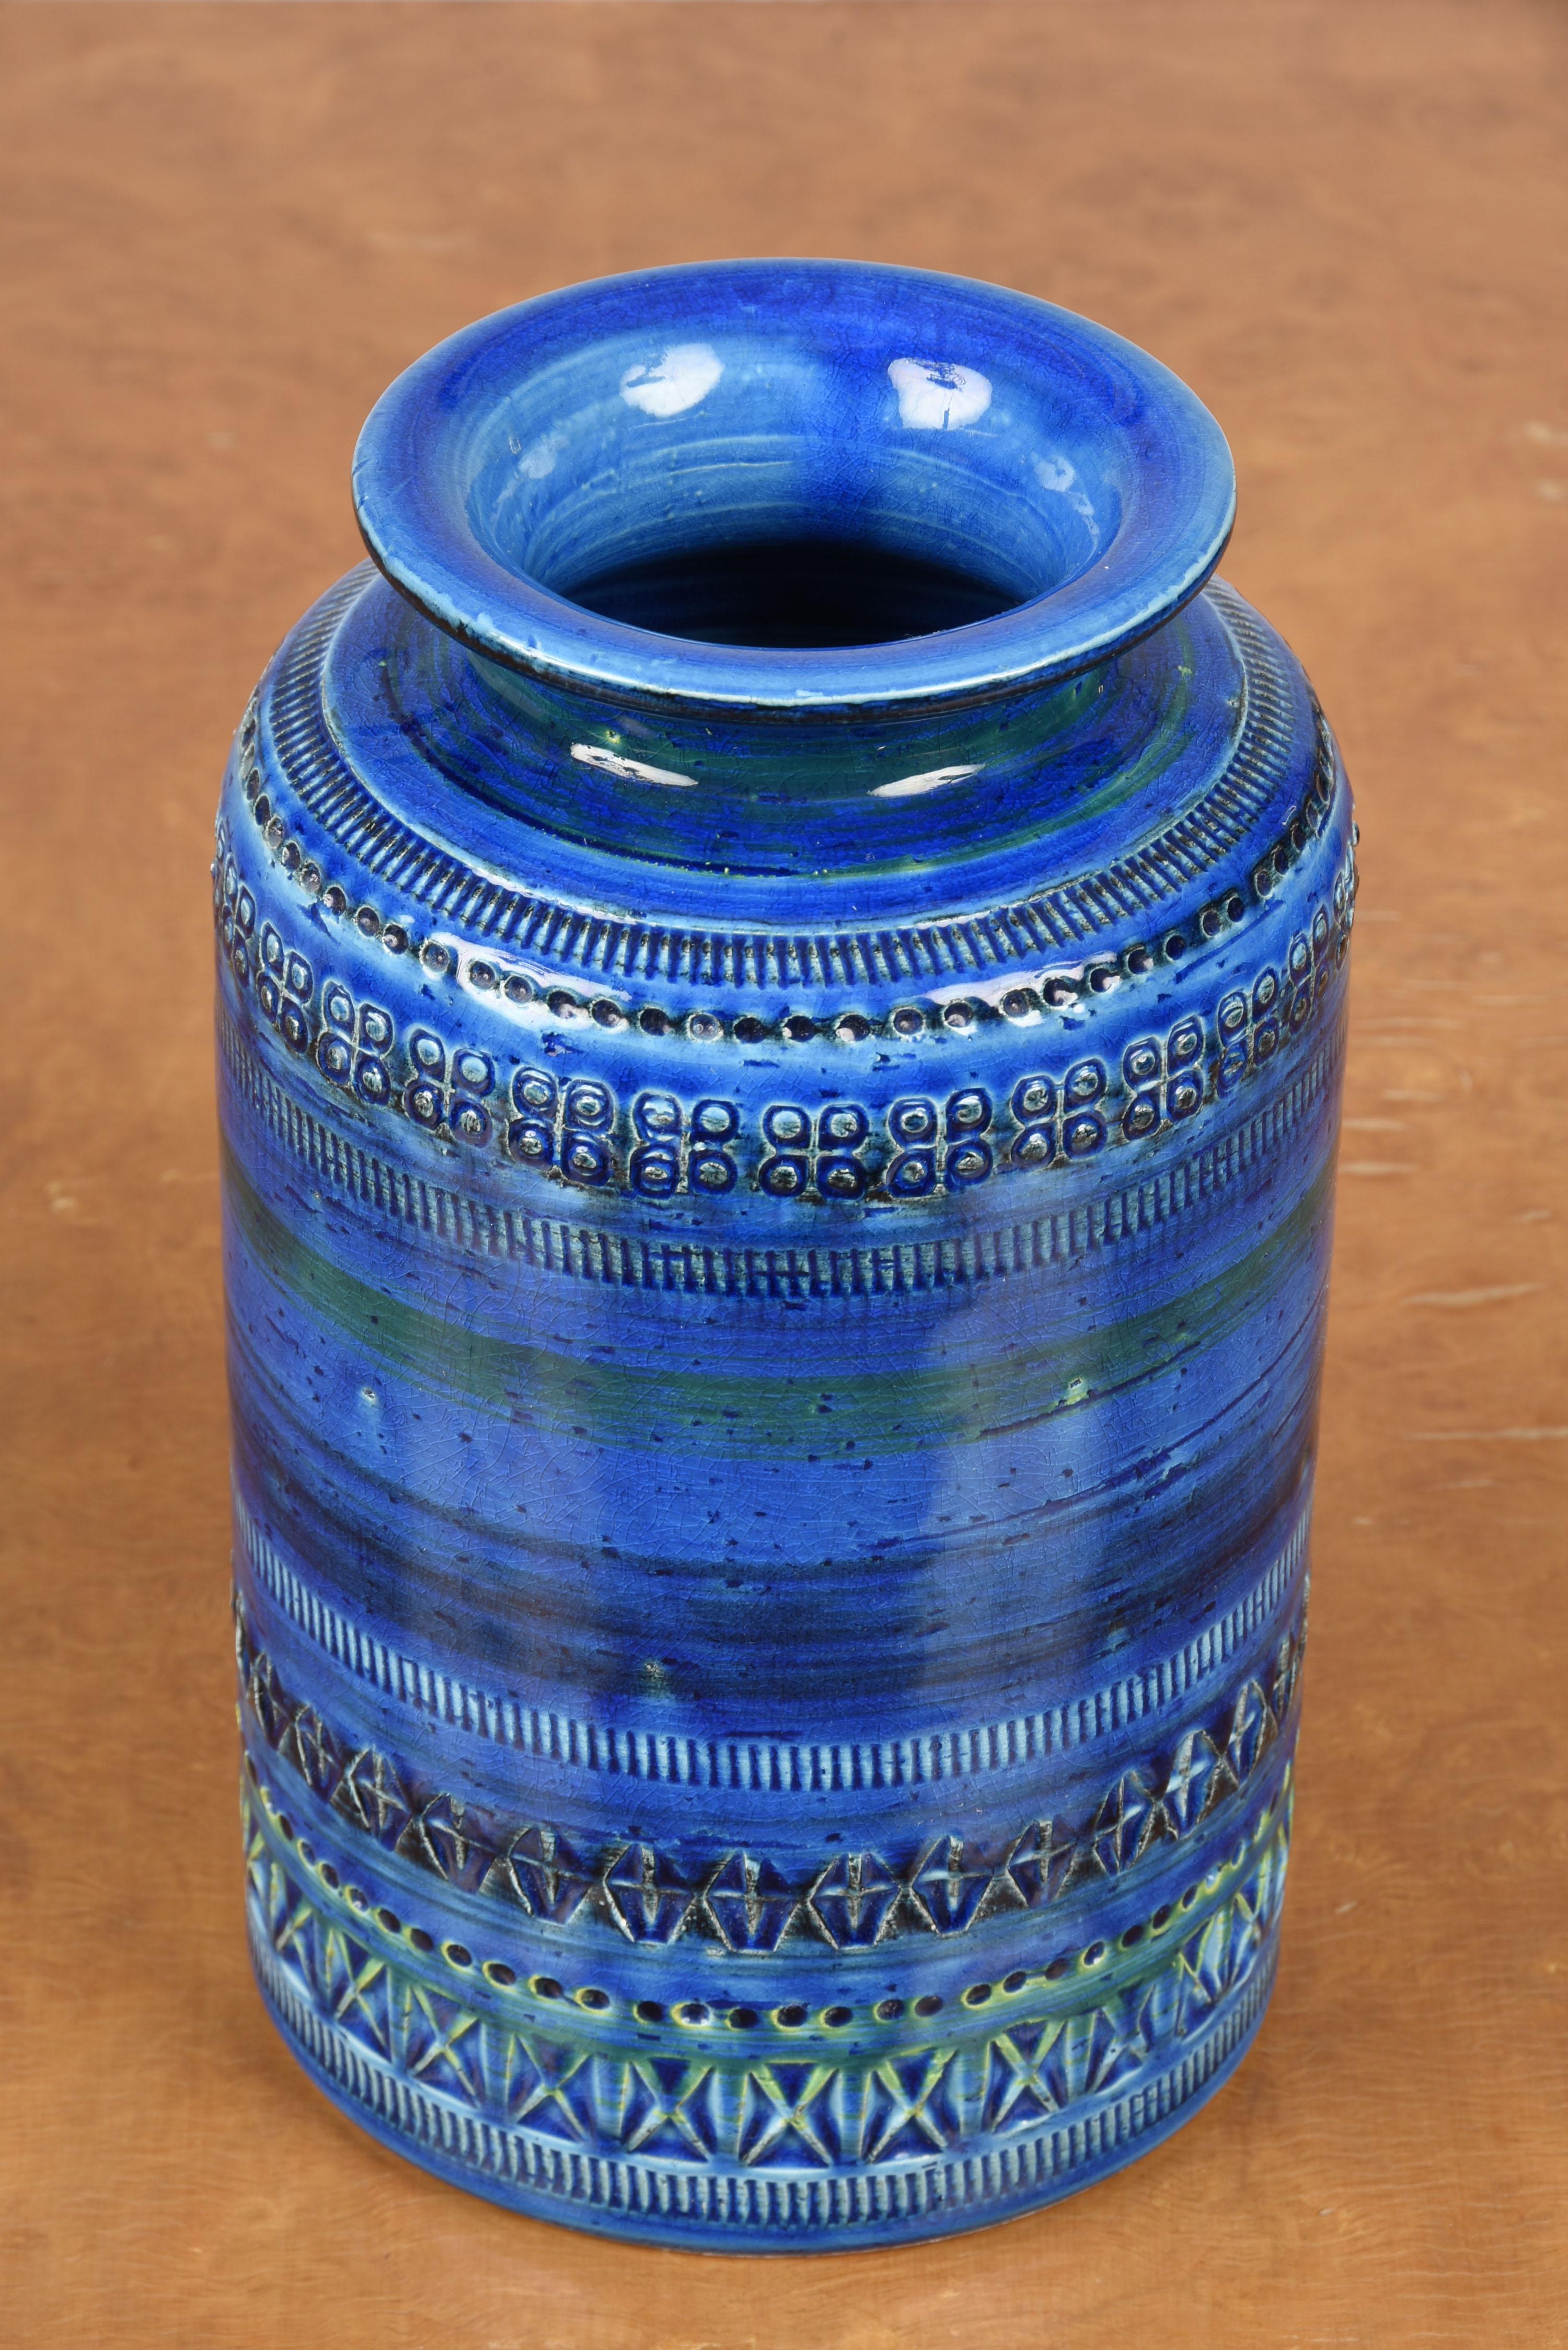 Erstaunlich Mitte des Jahrhunderts blau glasierte Terrakotta-Keramik blau Vase. Dieses fantastische Stück wurde von Flavia Montelupo und Aldo Londi für Bitossi in Italien, Rimini, in den späten 1950er oder frühen 1960er Jahren entworfen.

Dieses